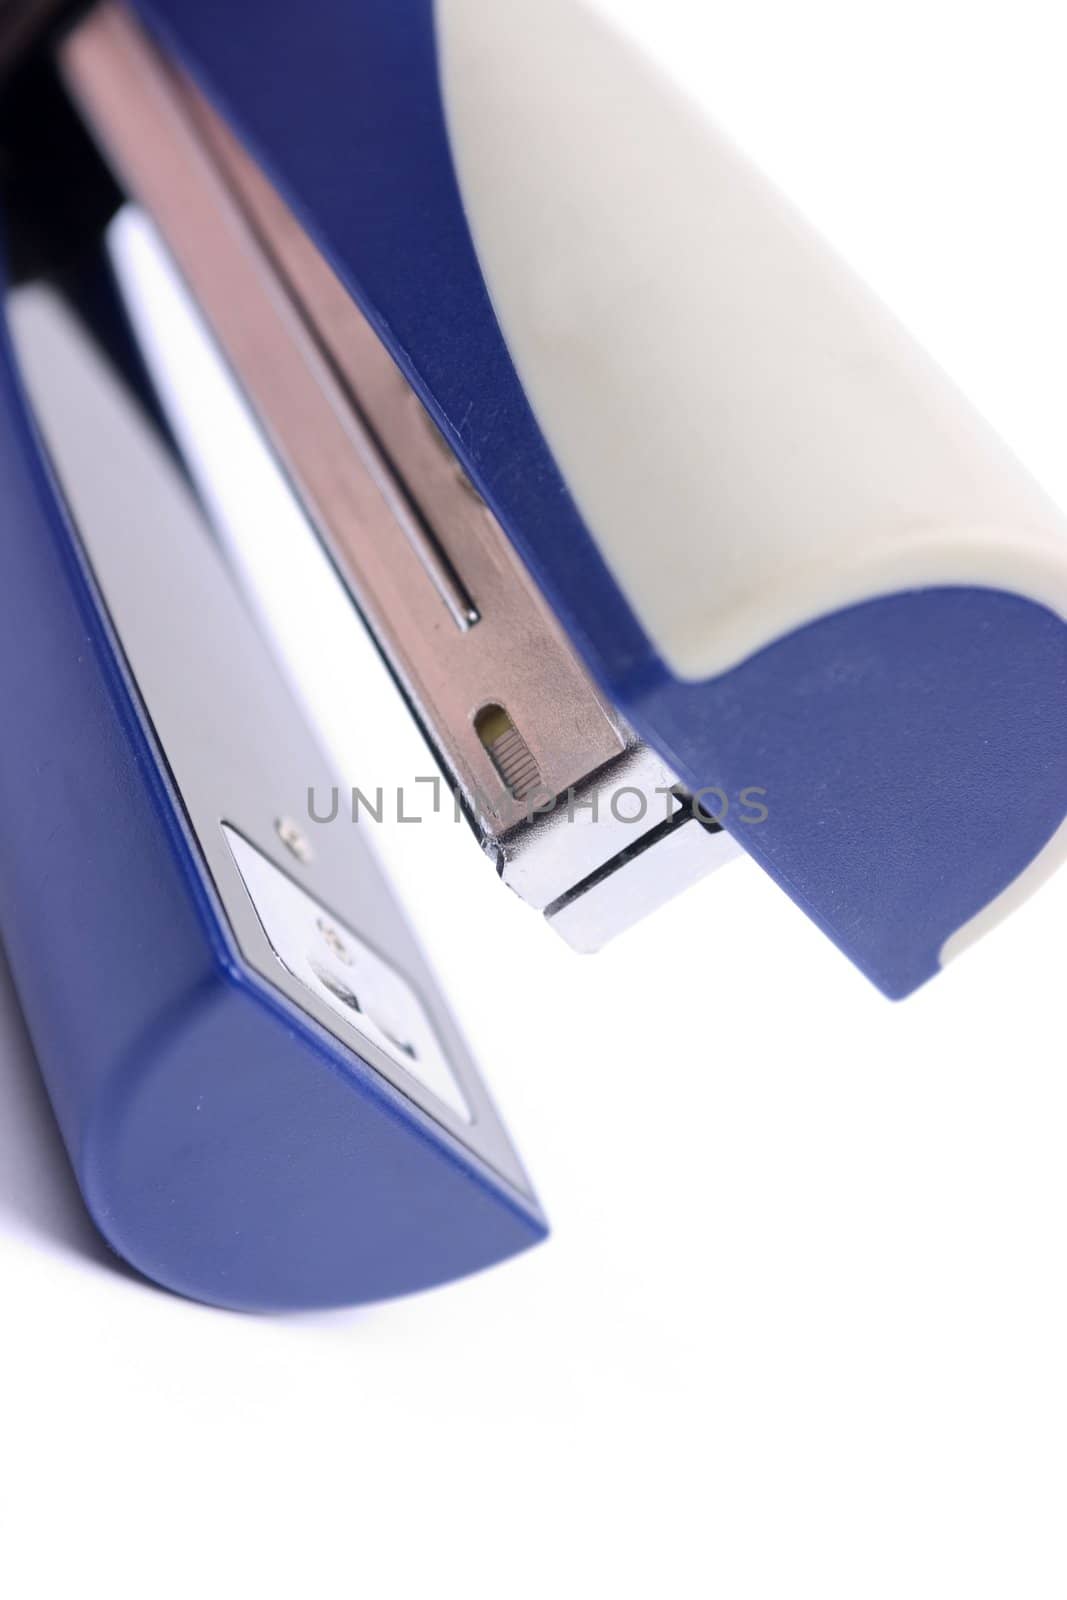 Blue stapler by litleskare